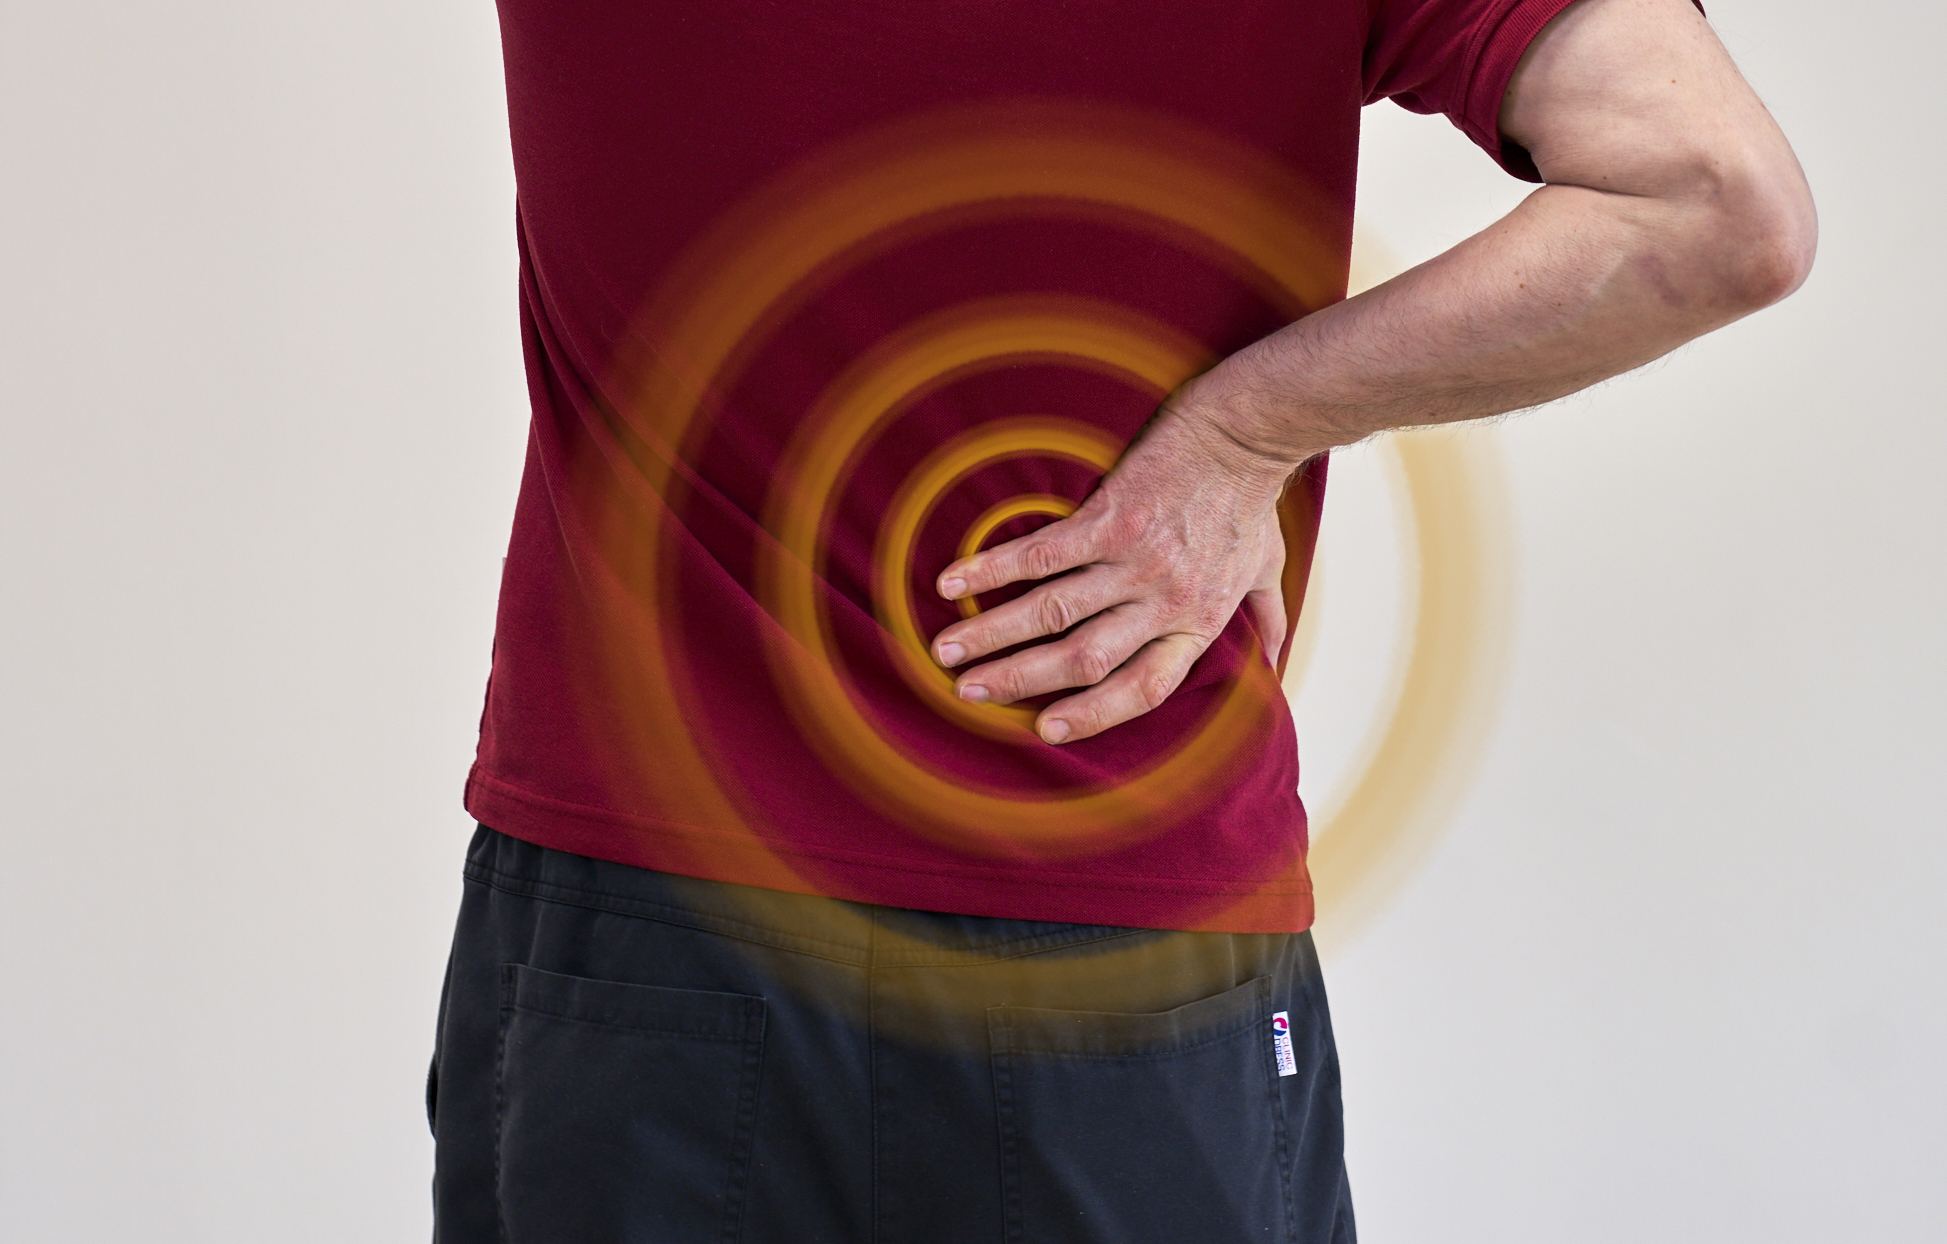 Rückenschmerzen bei Spinalkanalverengung bzw. Spinalkanalstenose.